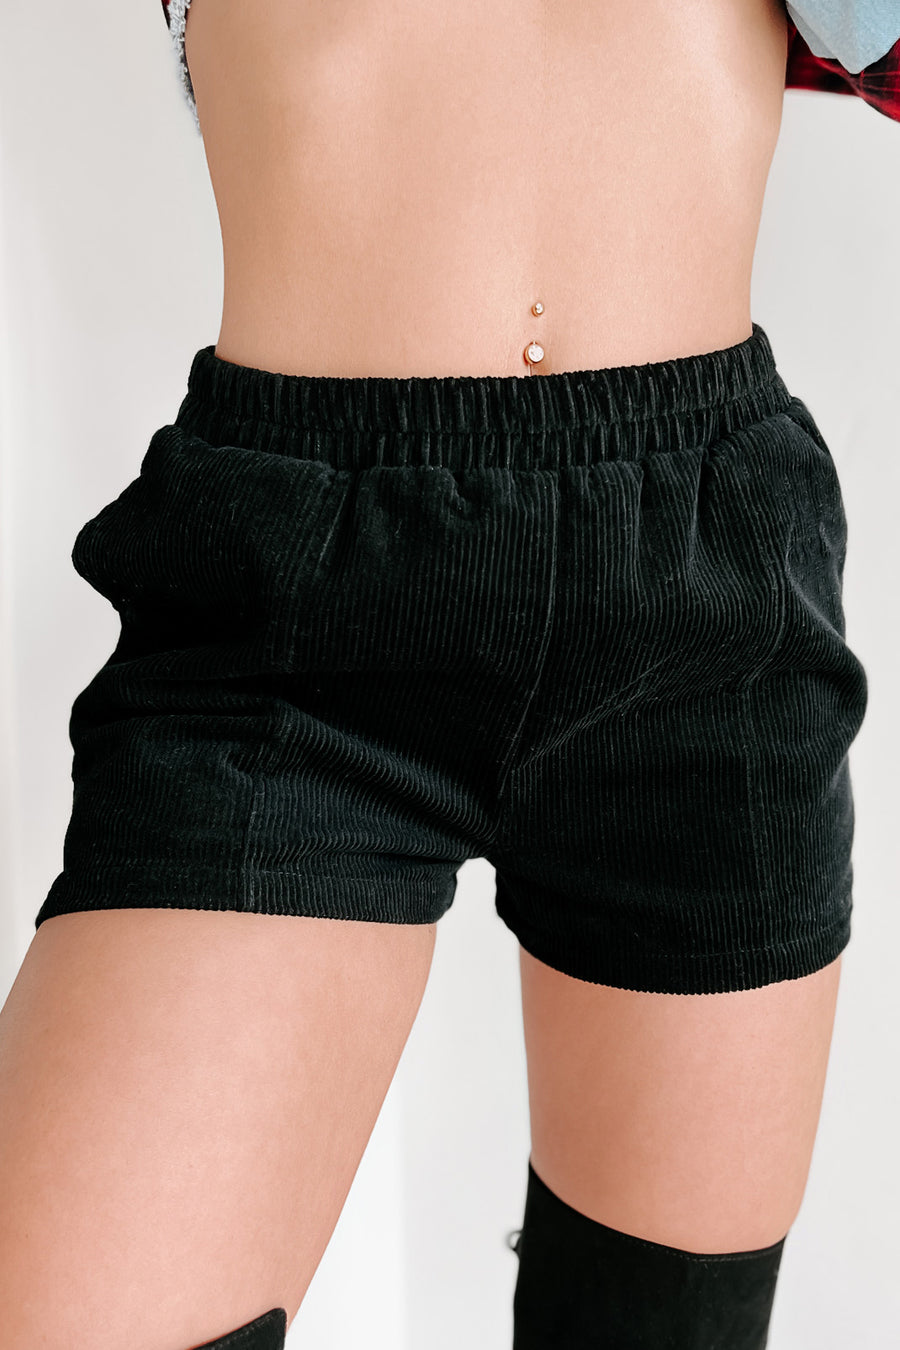 Acceptable Compromise Corduroy Shorts (Black) - NanaMacs